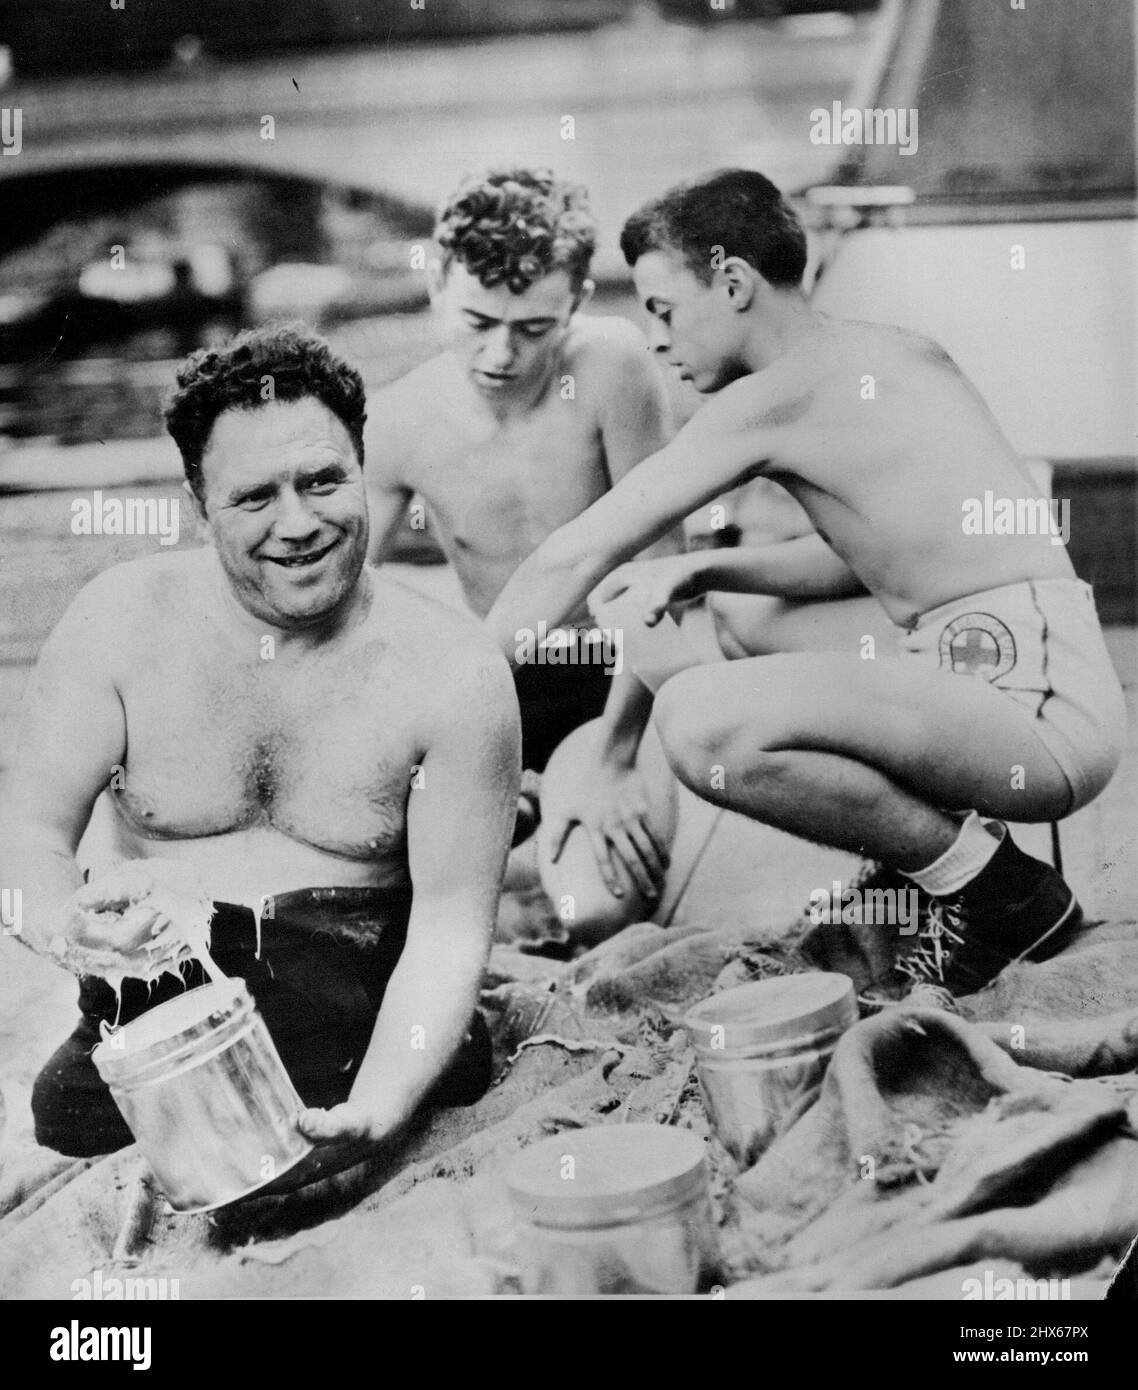 Il nuotatore senza gambe si prepara per non-Stop -- Charles Zimmy, nuotatore senza gambe, è mostrato ad Albany, N.Y., Agosto 24, mentre si prepara ad applicare grasso al suo corpo per il suo tentativo di nuotare non-stop da Albany a New York City lungo il fiume Hudson. Aiutandolo, centro e destra, sono Robert Sackrider e Roy Jones, membri dell'Albany Y.M.C.A. Agosto 24, 1937. (Foto di stampa associata). Foto Stock